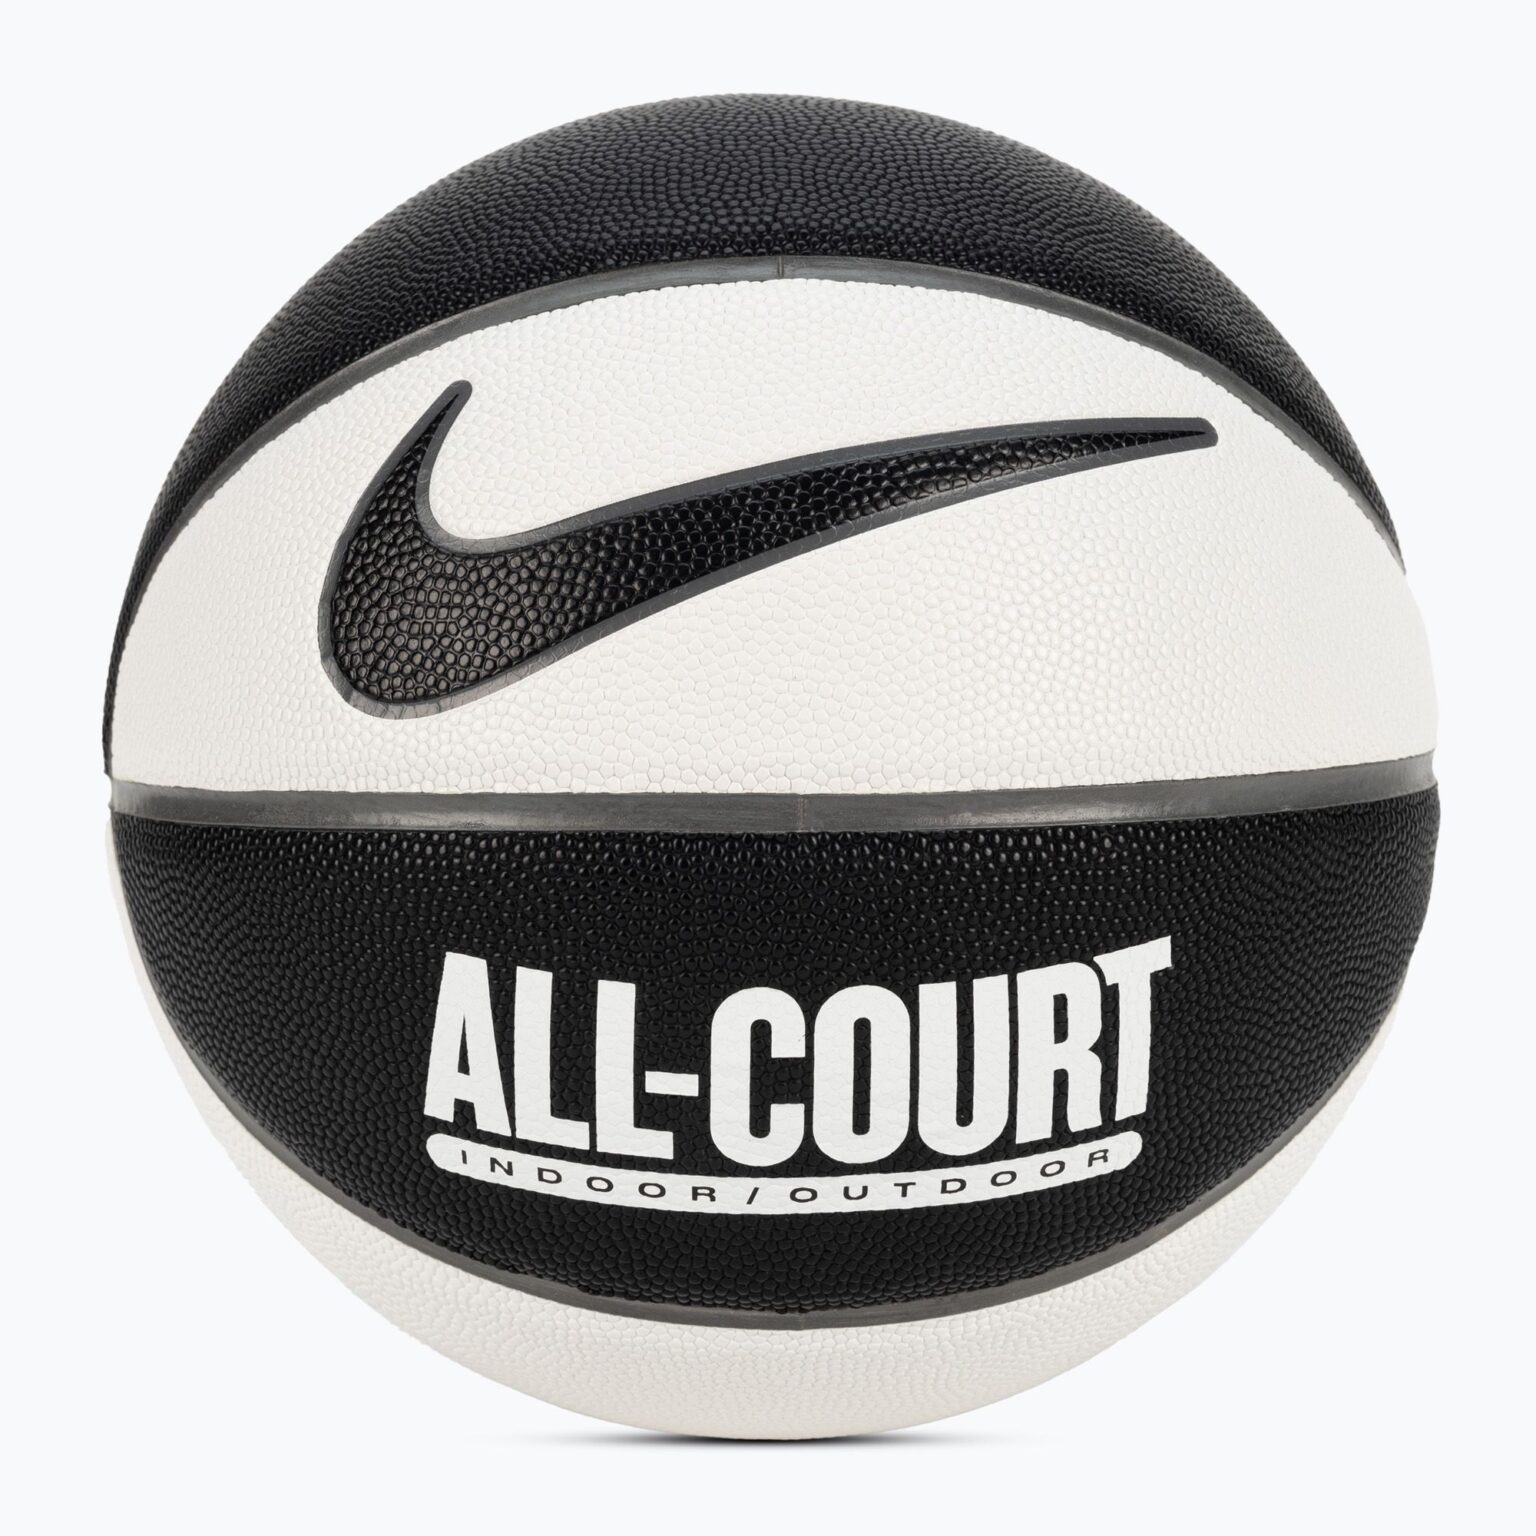 Piłka do koszykówki Nike Everyday All Court 8P Deflated black/white/cool grey/black rozmiar 7